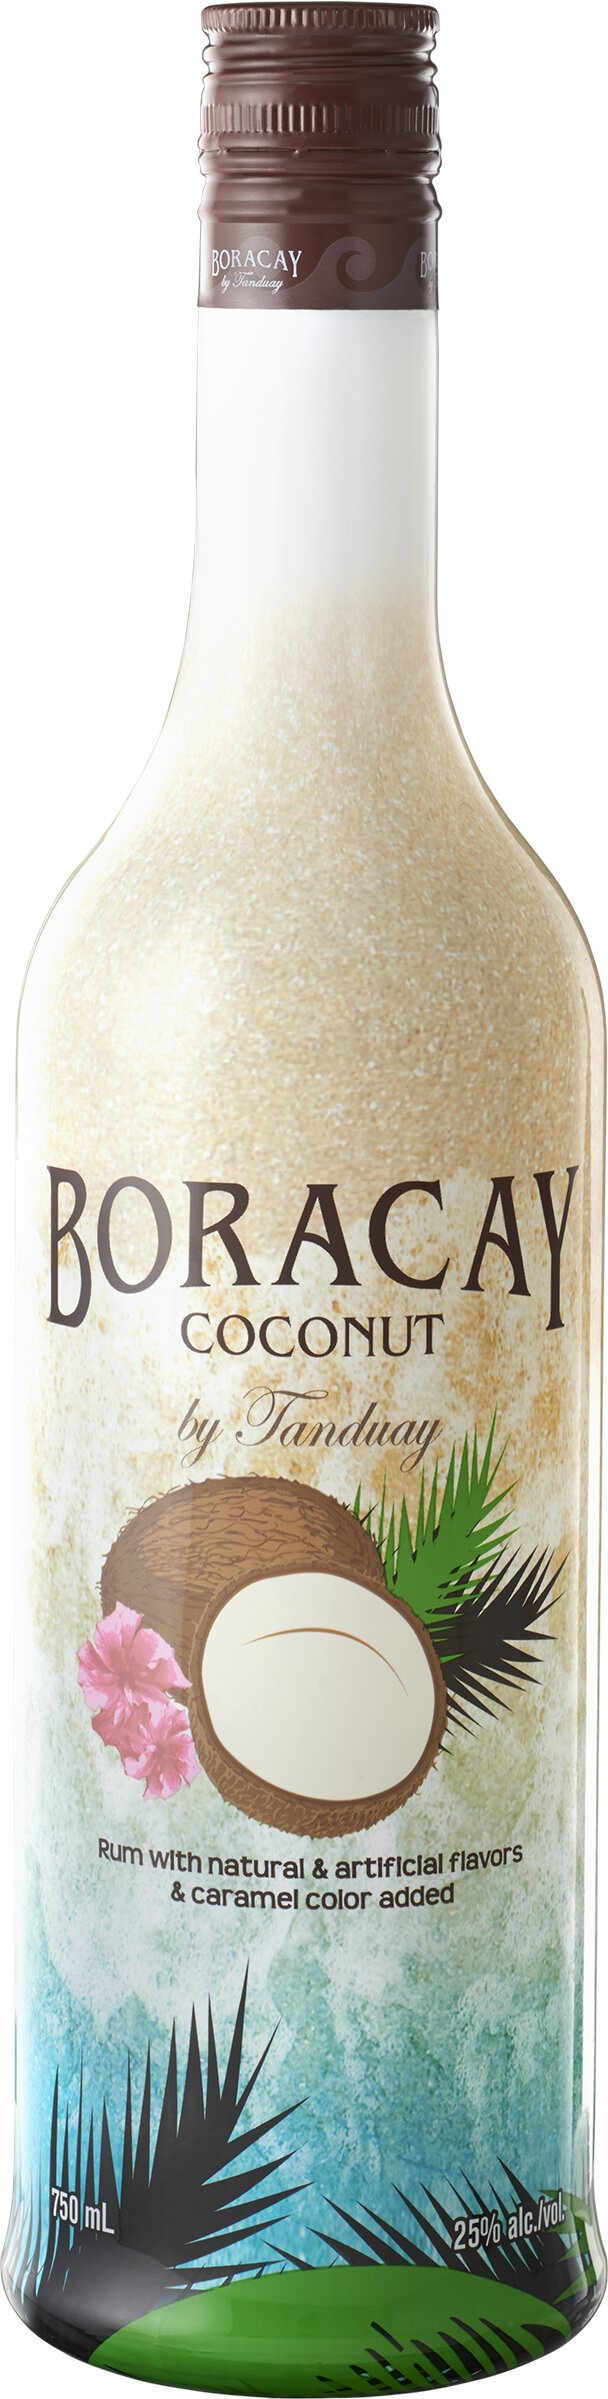 Tanduay Boracay Coconut